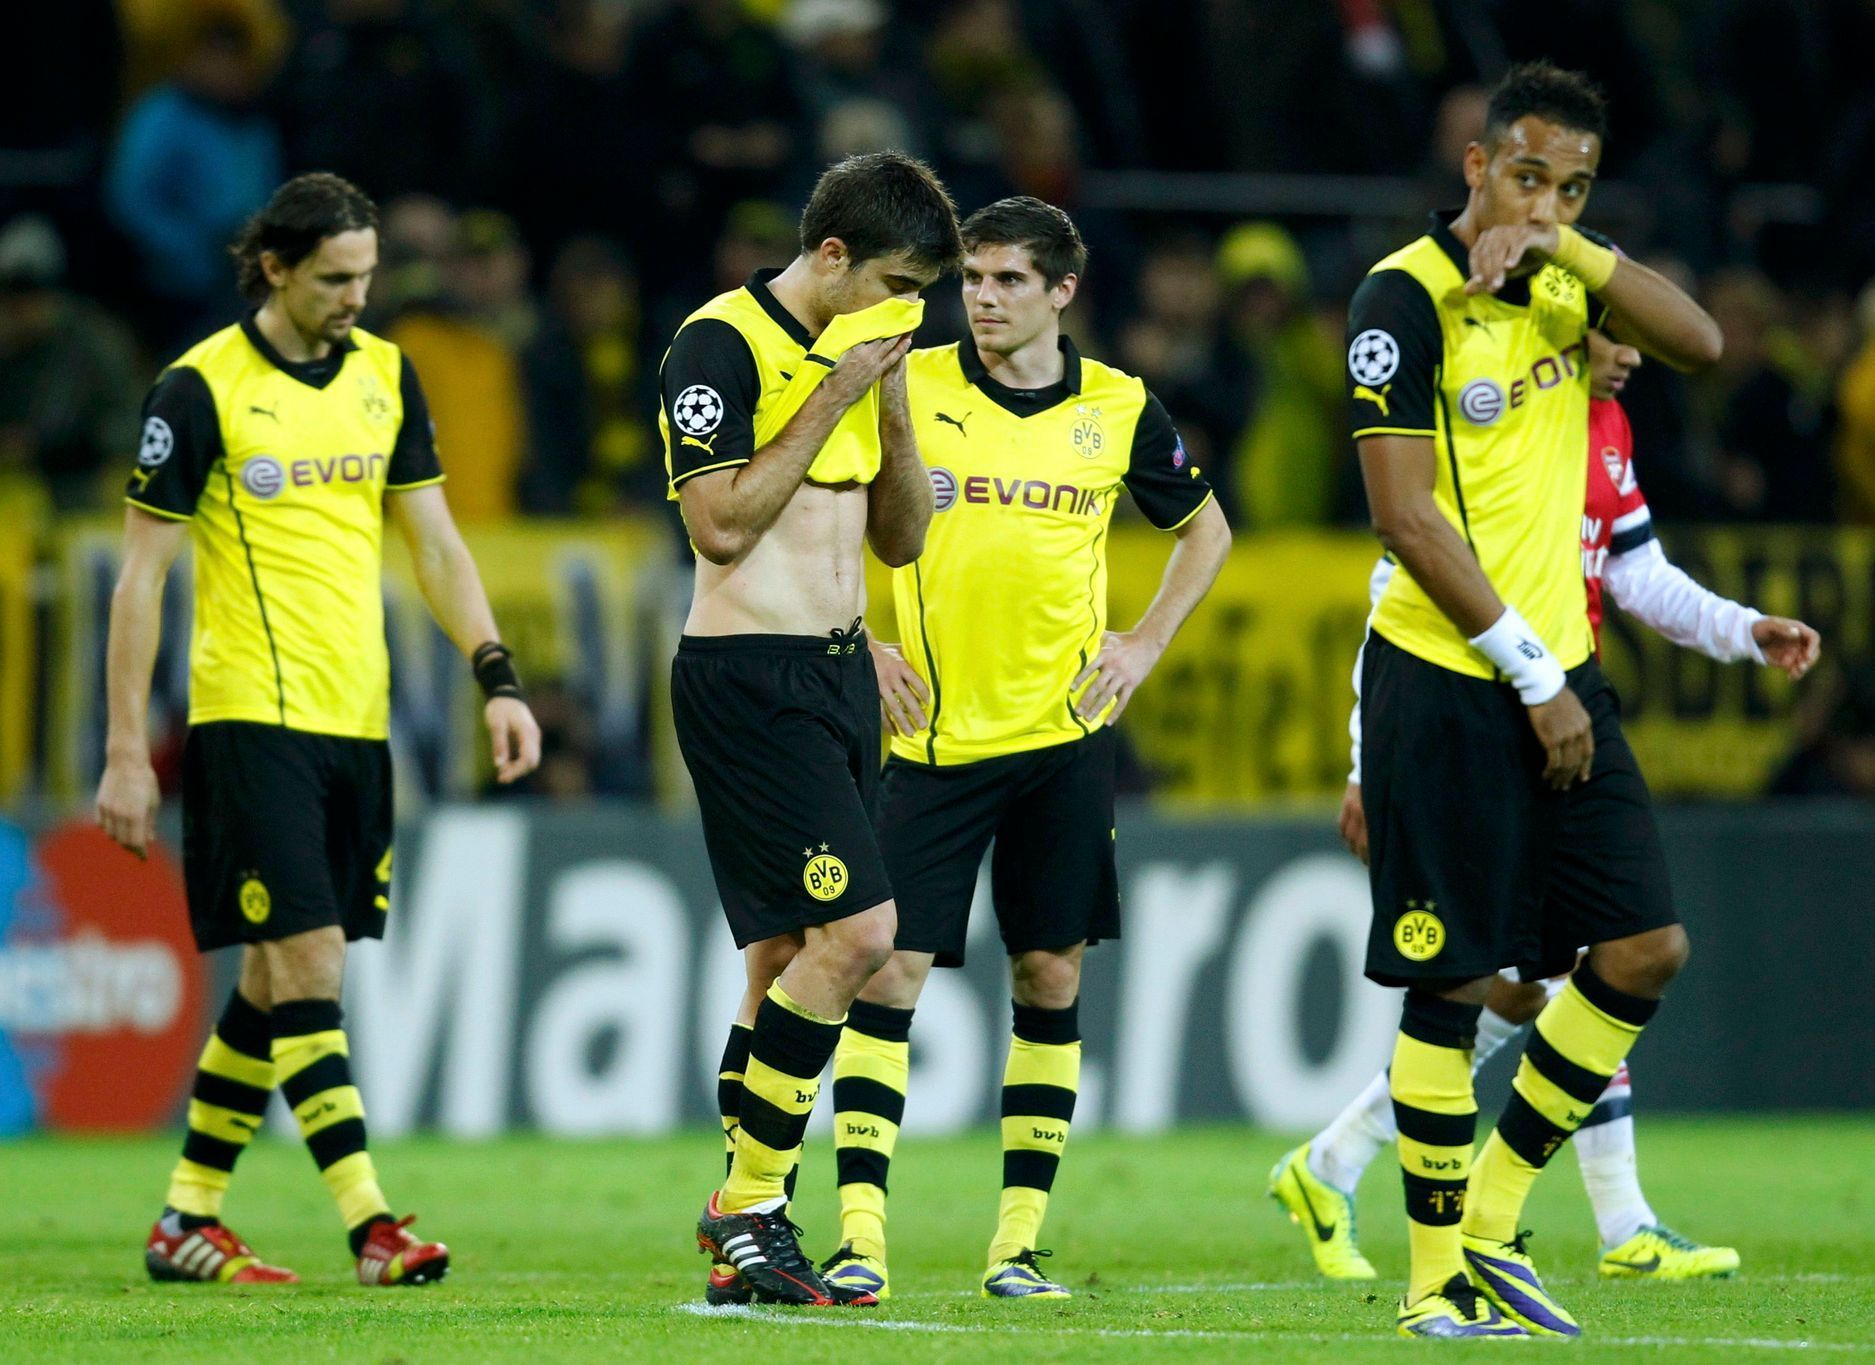 Smutek hráčů Dortmund po porážce s Arsenalem